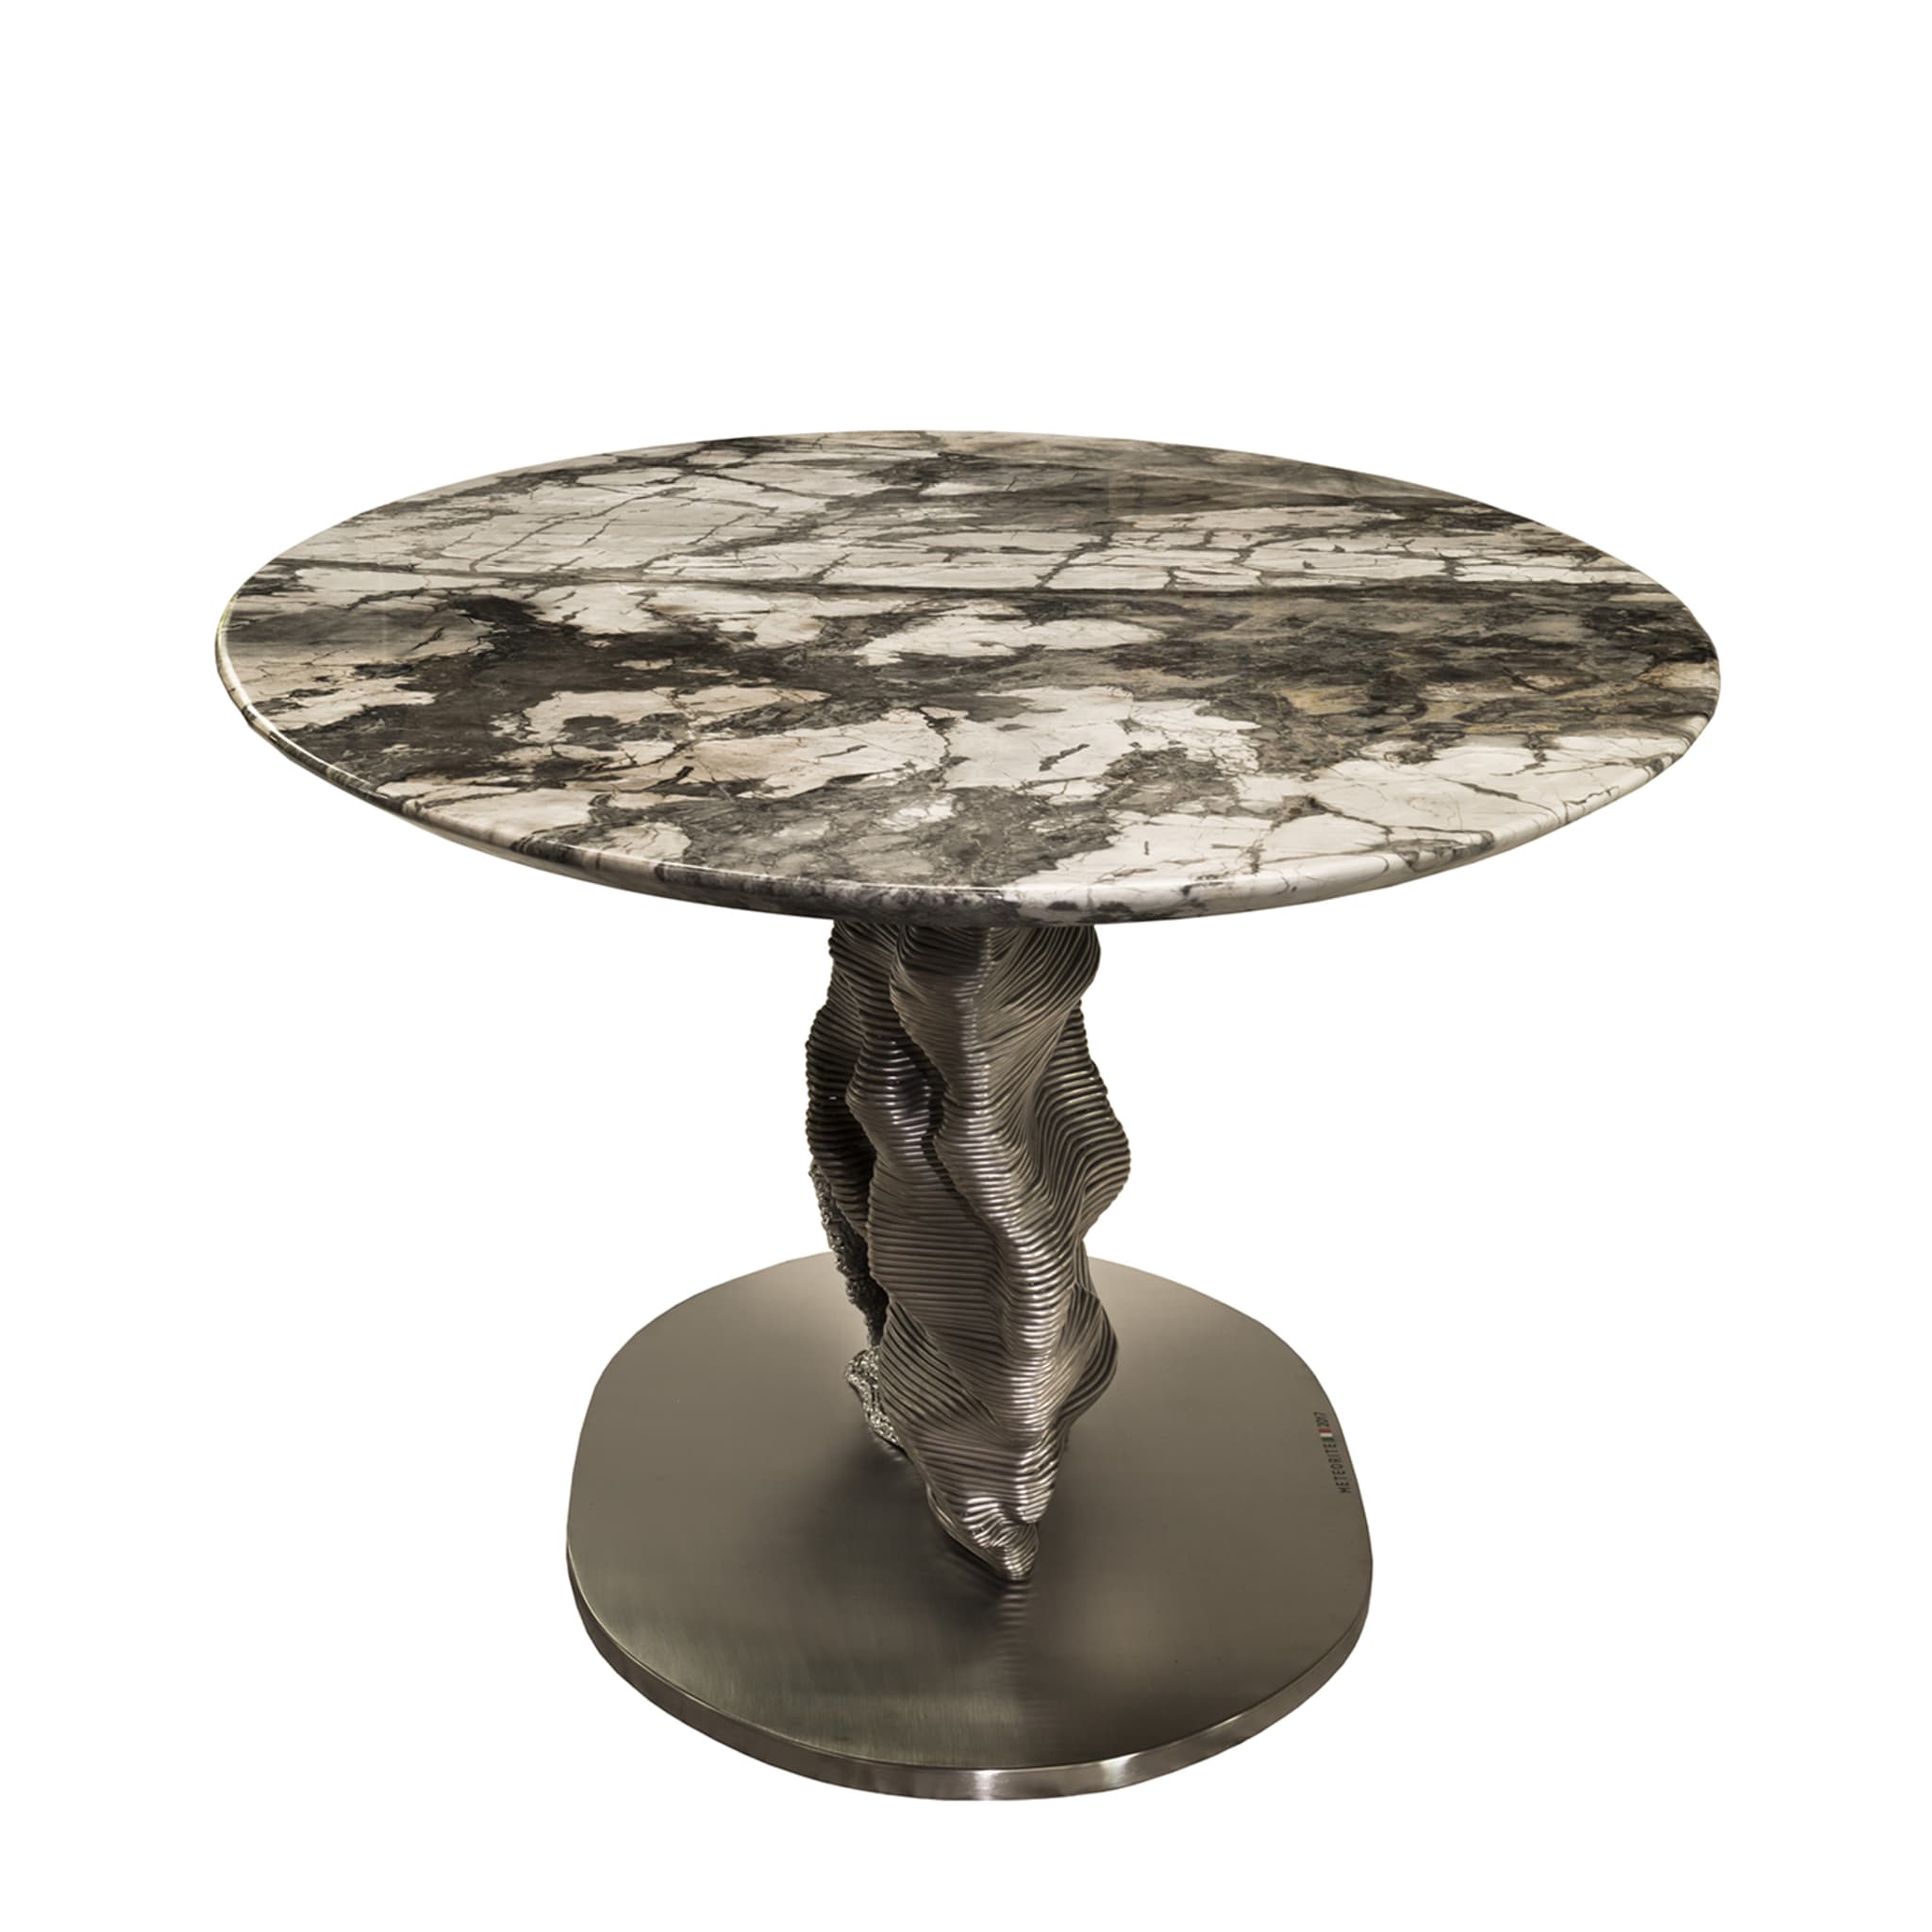 Meteorite Sculptural Table - Alternative view 4